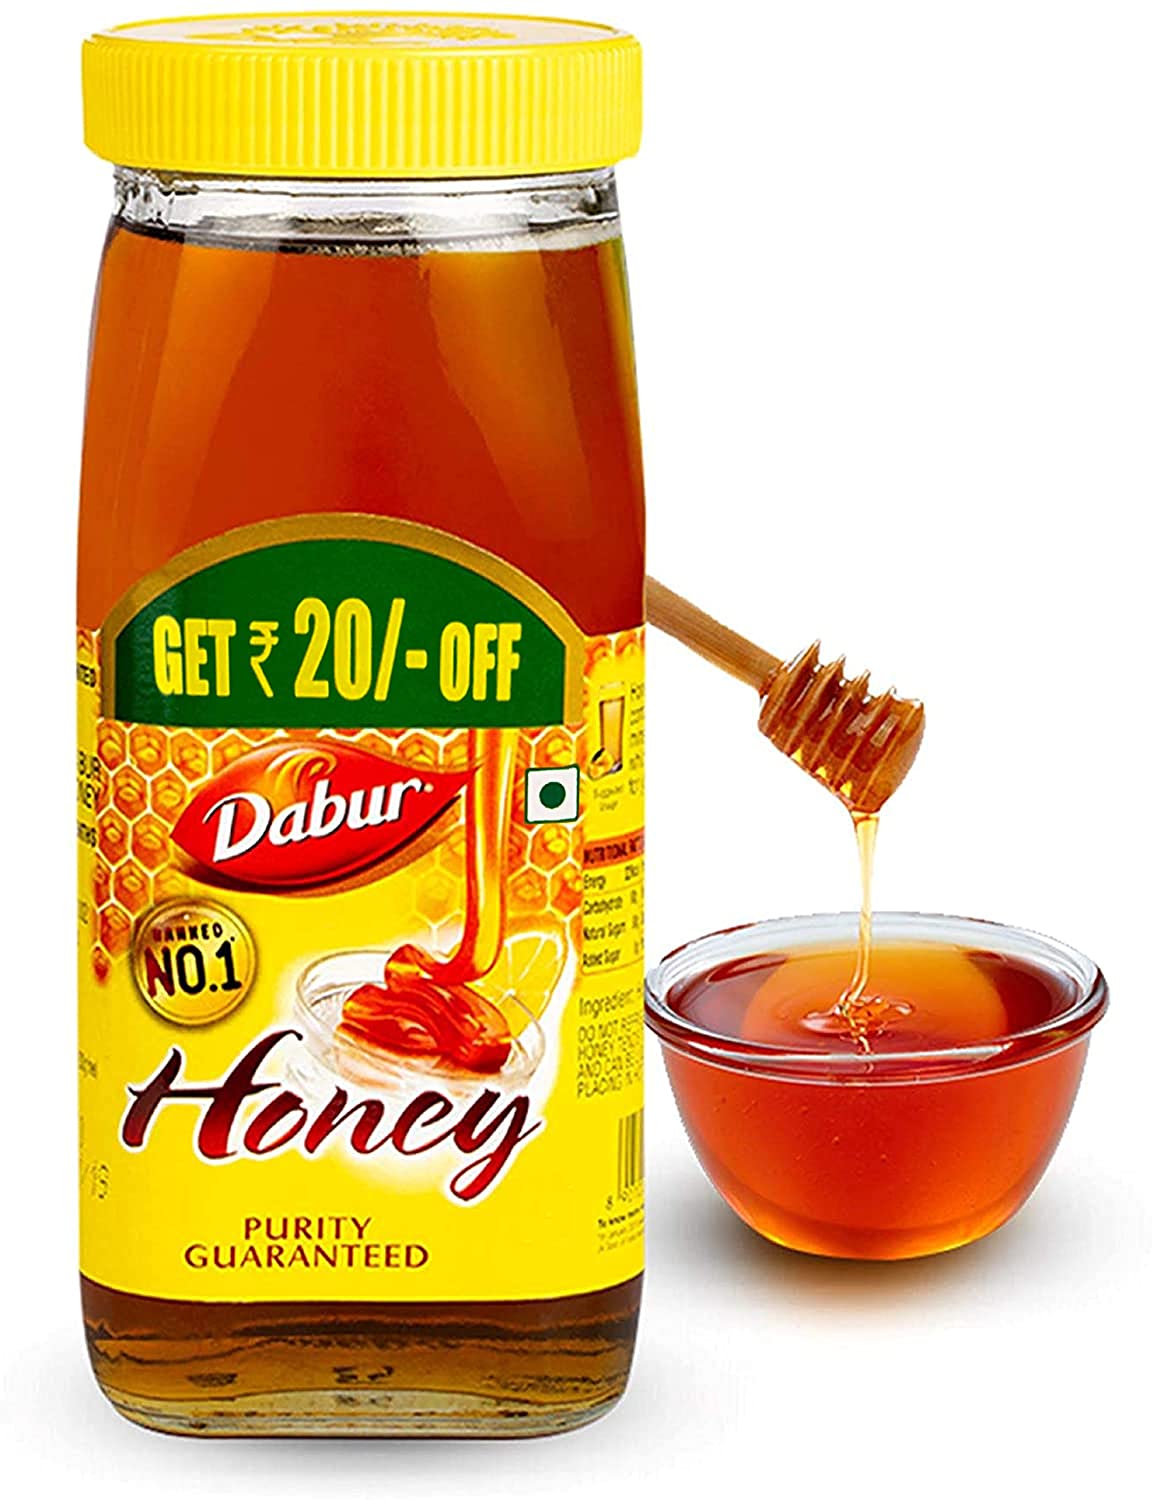 Dabur Honey - World's No. 1 Honey Brand